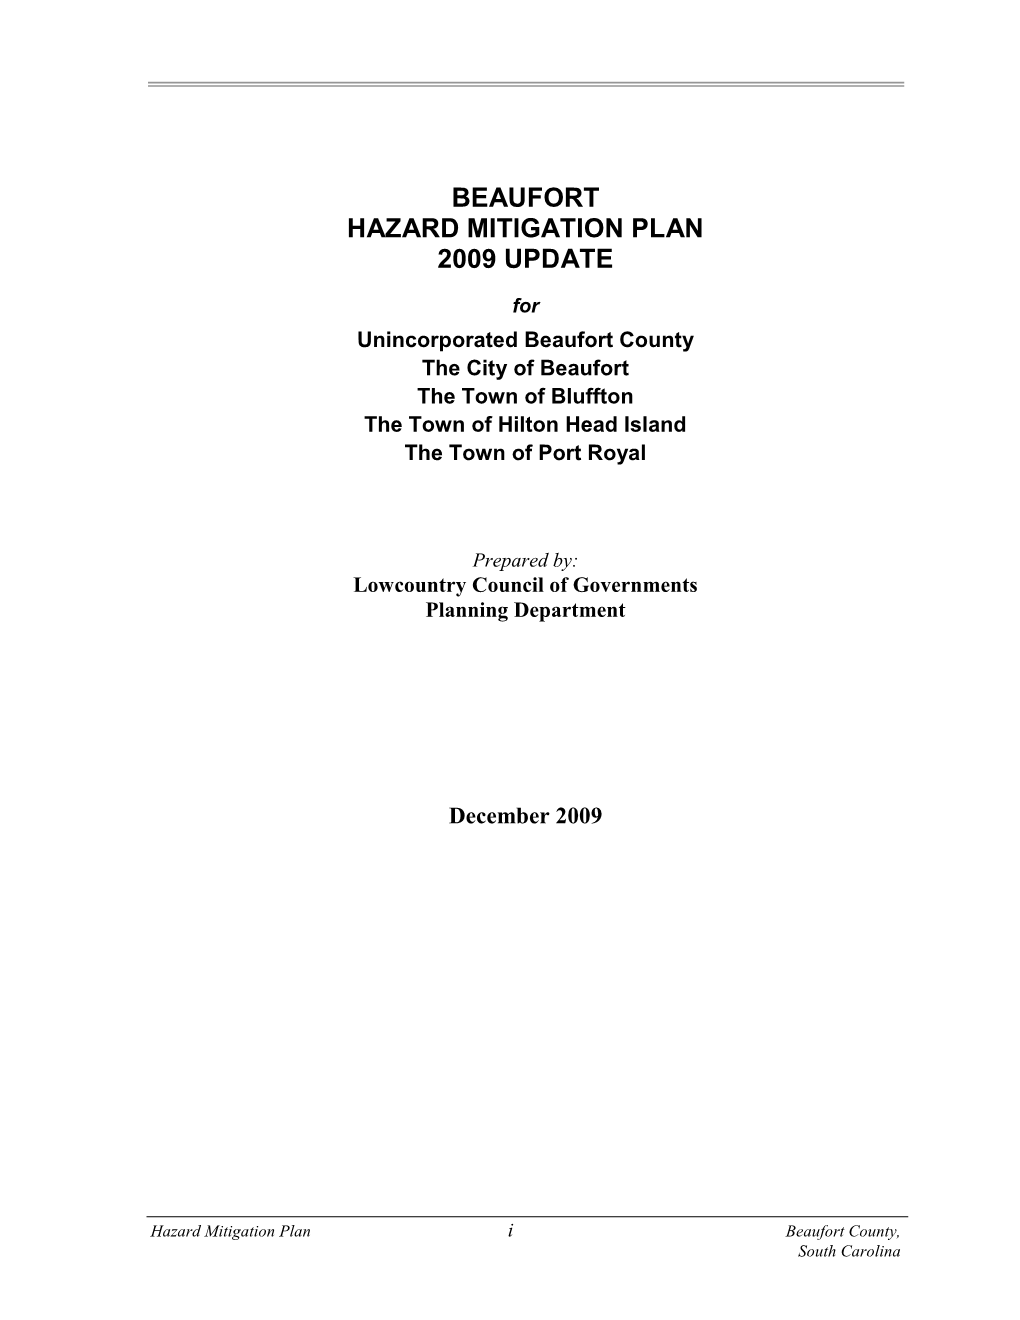 Hazard Mitigation Plan 2009 Update